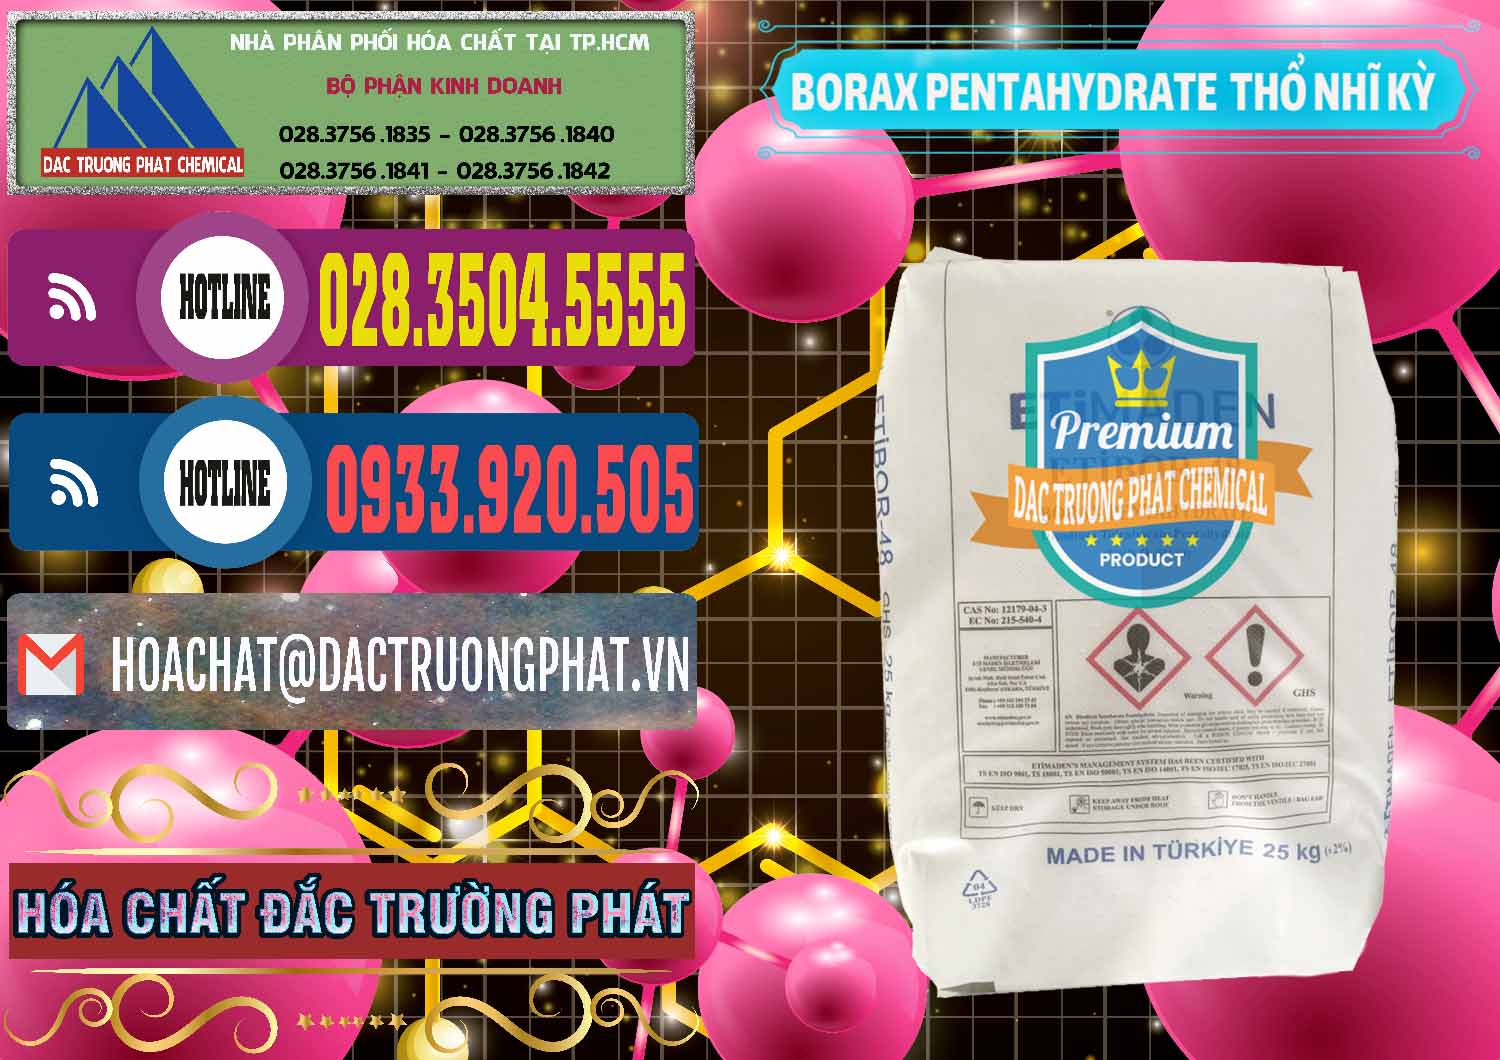 Công ty chuyên bán ( cung cấp ) Borax Pentahydrate Thổ Nhĩ Kỳ Turkey - 0431 - Nơi cung cấp & phân phối hóa chất tại TP.HCM - muabanhoachat.com.vn